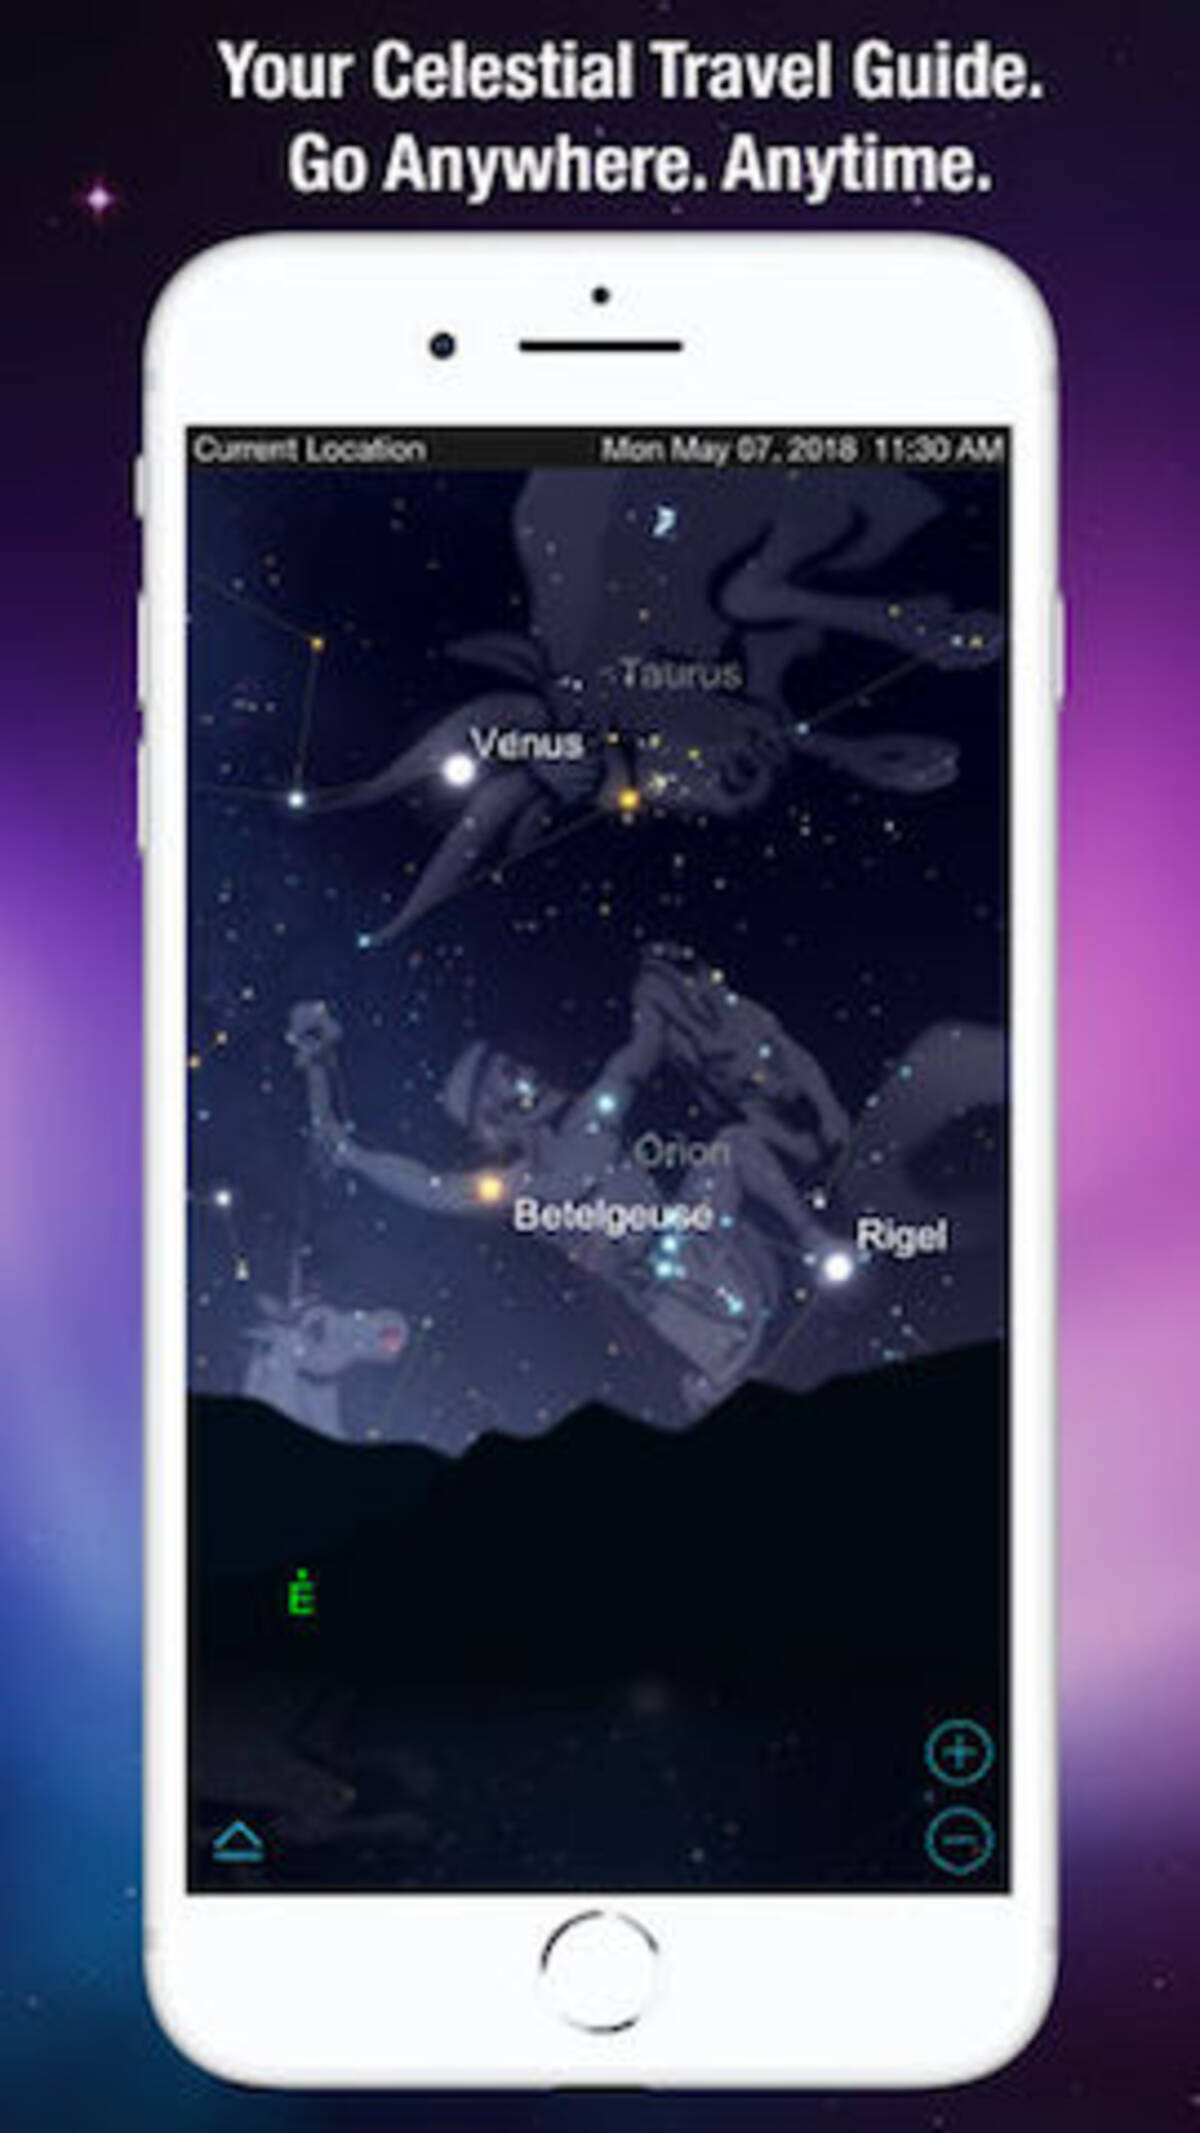 今日の無料アプリ 360円 無料 現在地の天体情報がプラネタリウム感覚でわかる Skysafari 6 他 2本を紹介 ローリエプレス